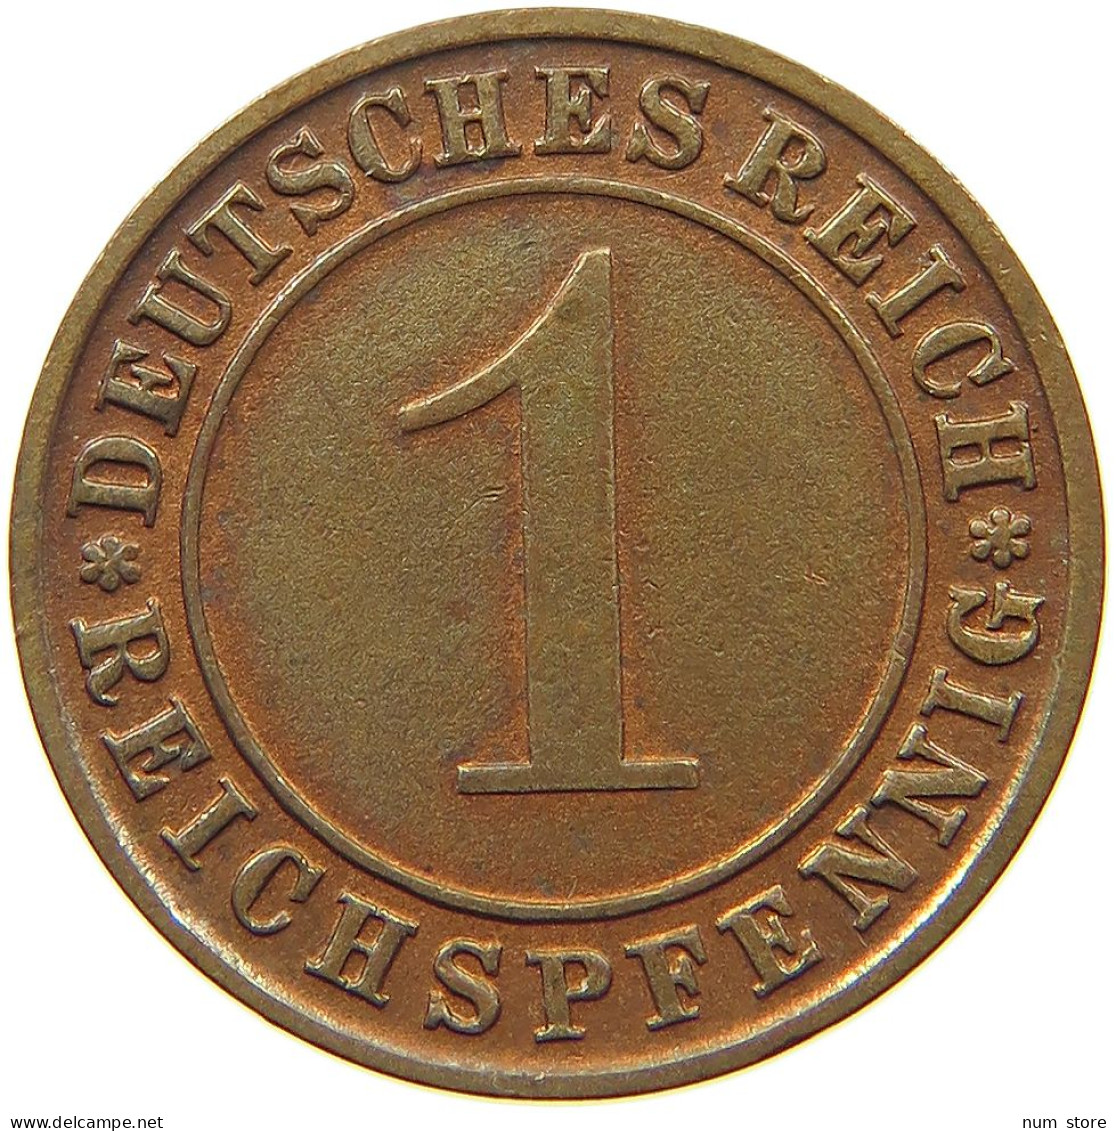 GERMANY WEIMAR 1 PFENNIG 1930 D #c082 0315 - 1 Rentenpfennig & 1 Reichspfennig